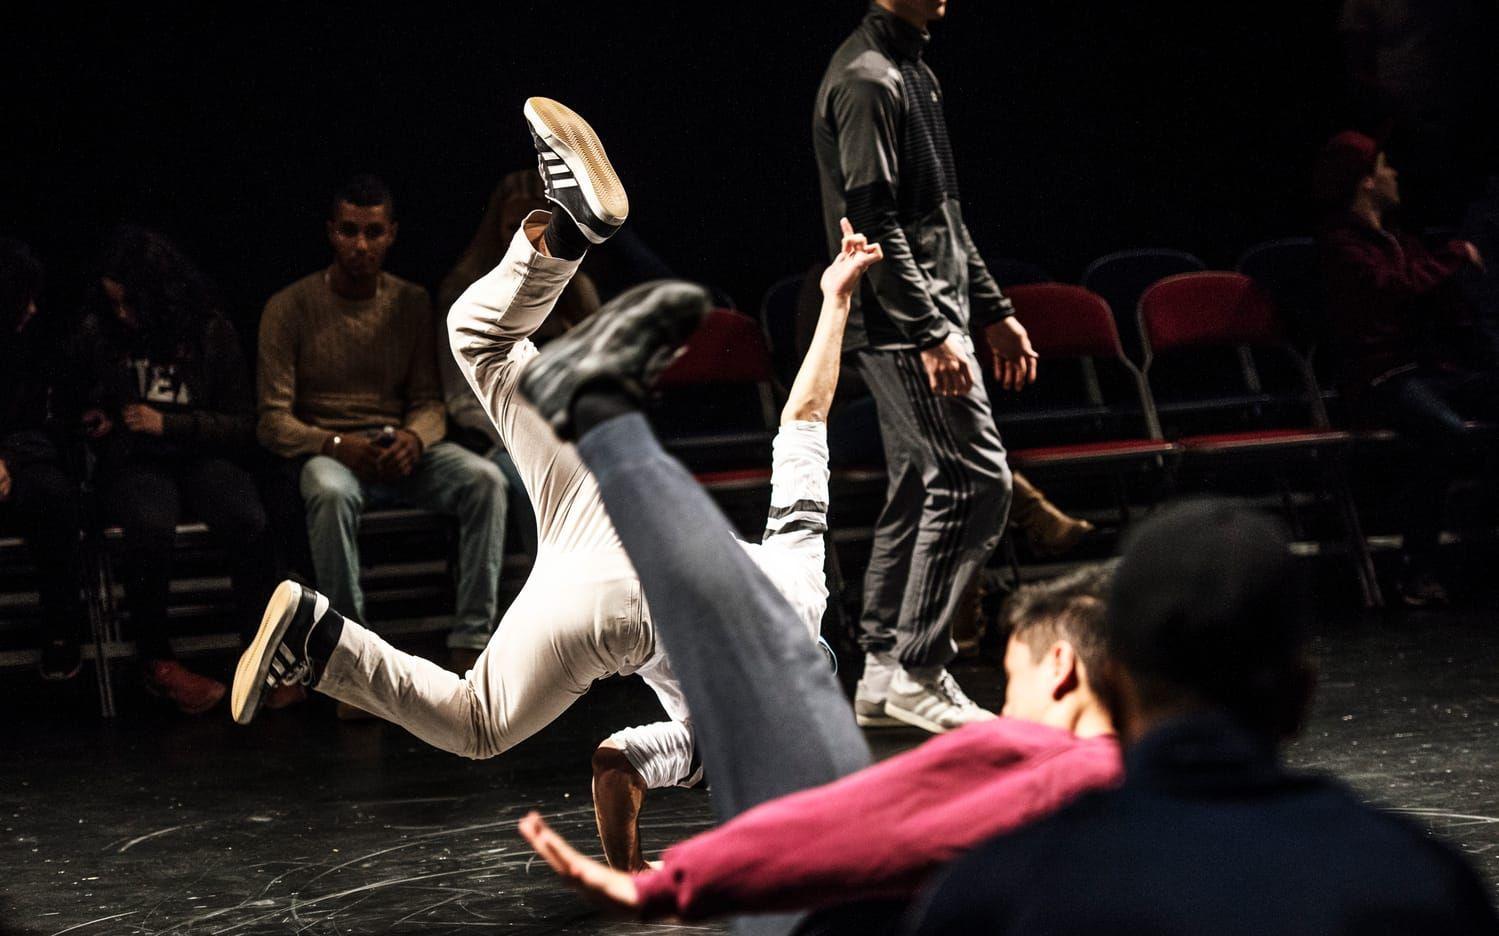 Breakdance battle. Två par möter varandra i en duell där precision och styrka är två viktiga element. Bild: Olof Ohlsson